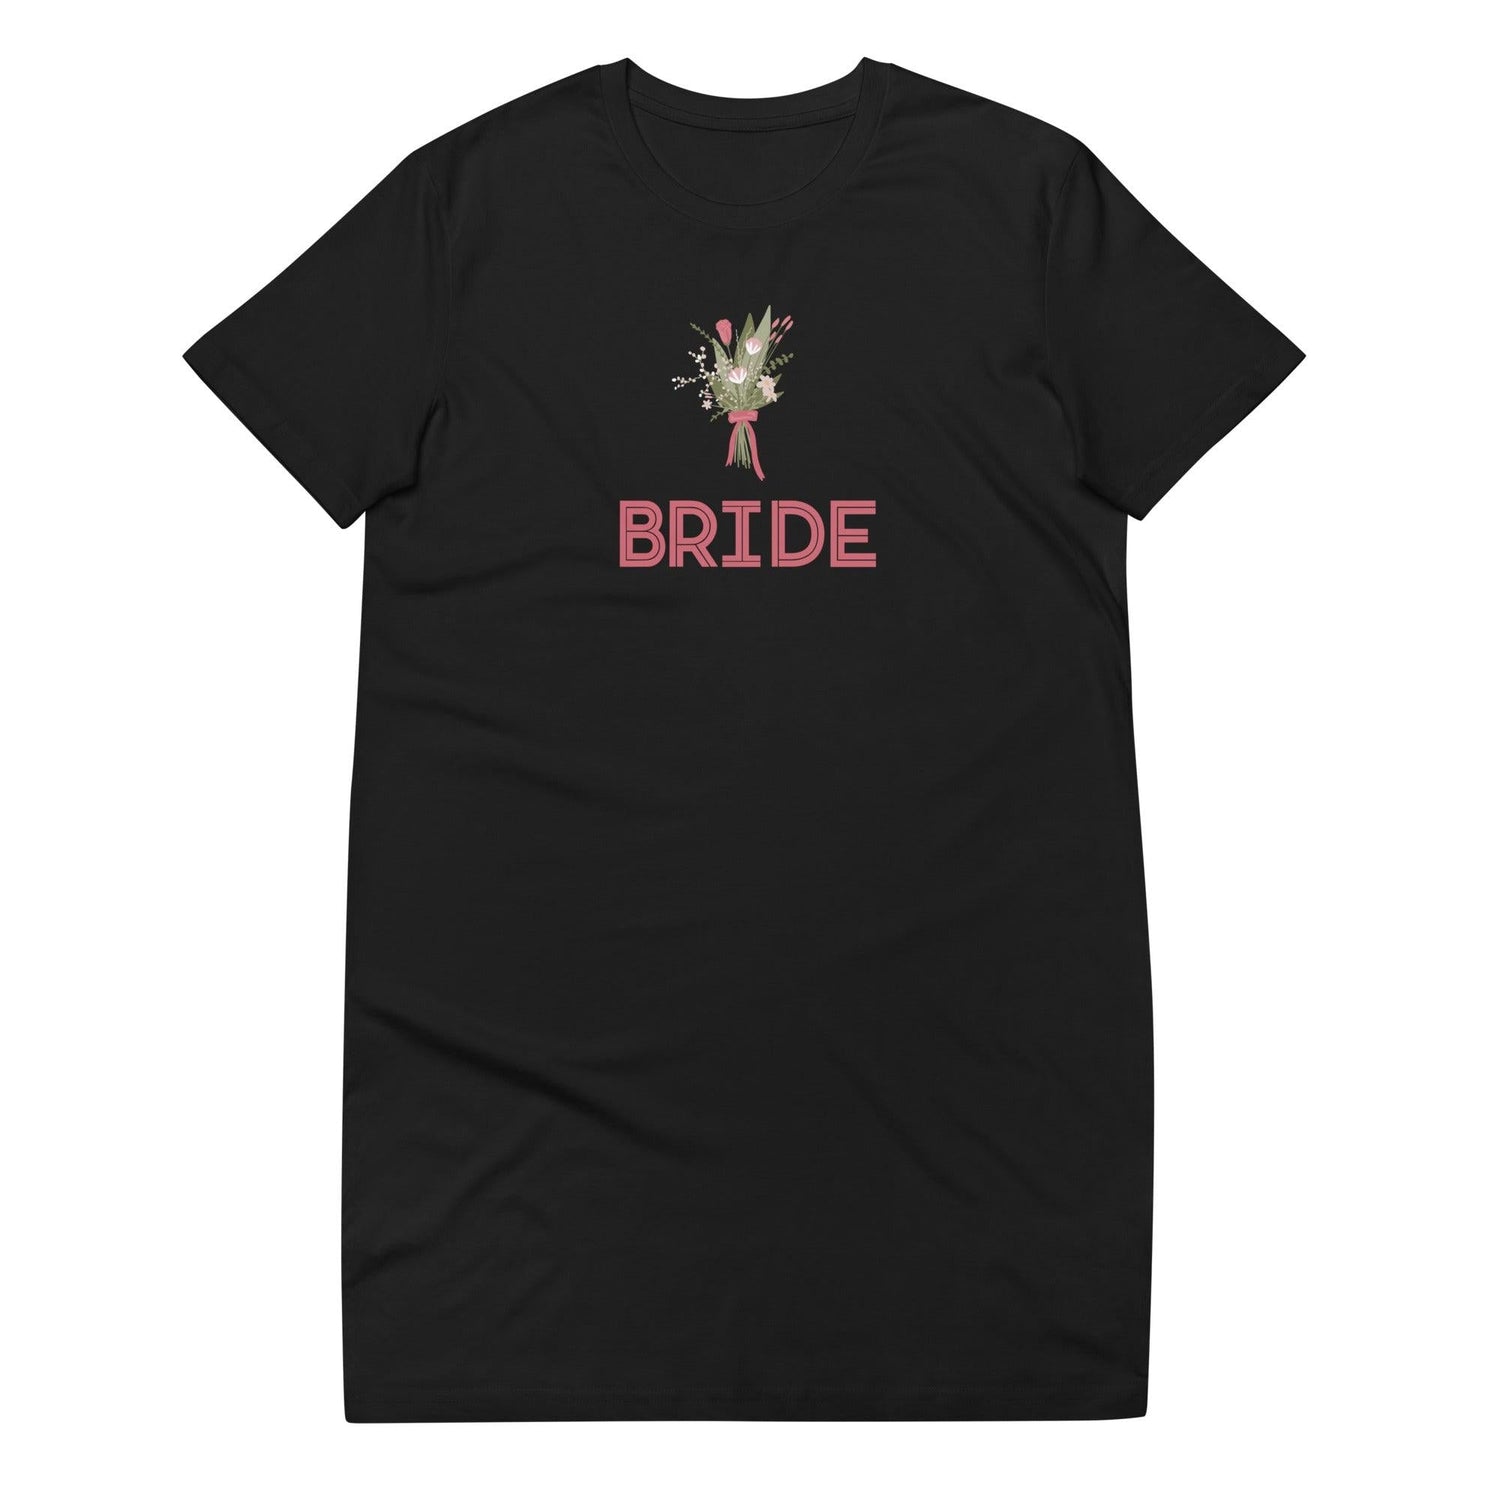 Bride Organic cotton t-shirt dress - Swim Coverup by Oaklynn Lane - Black